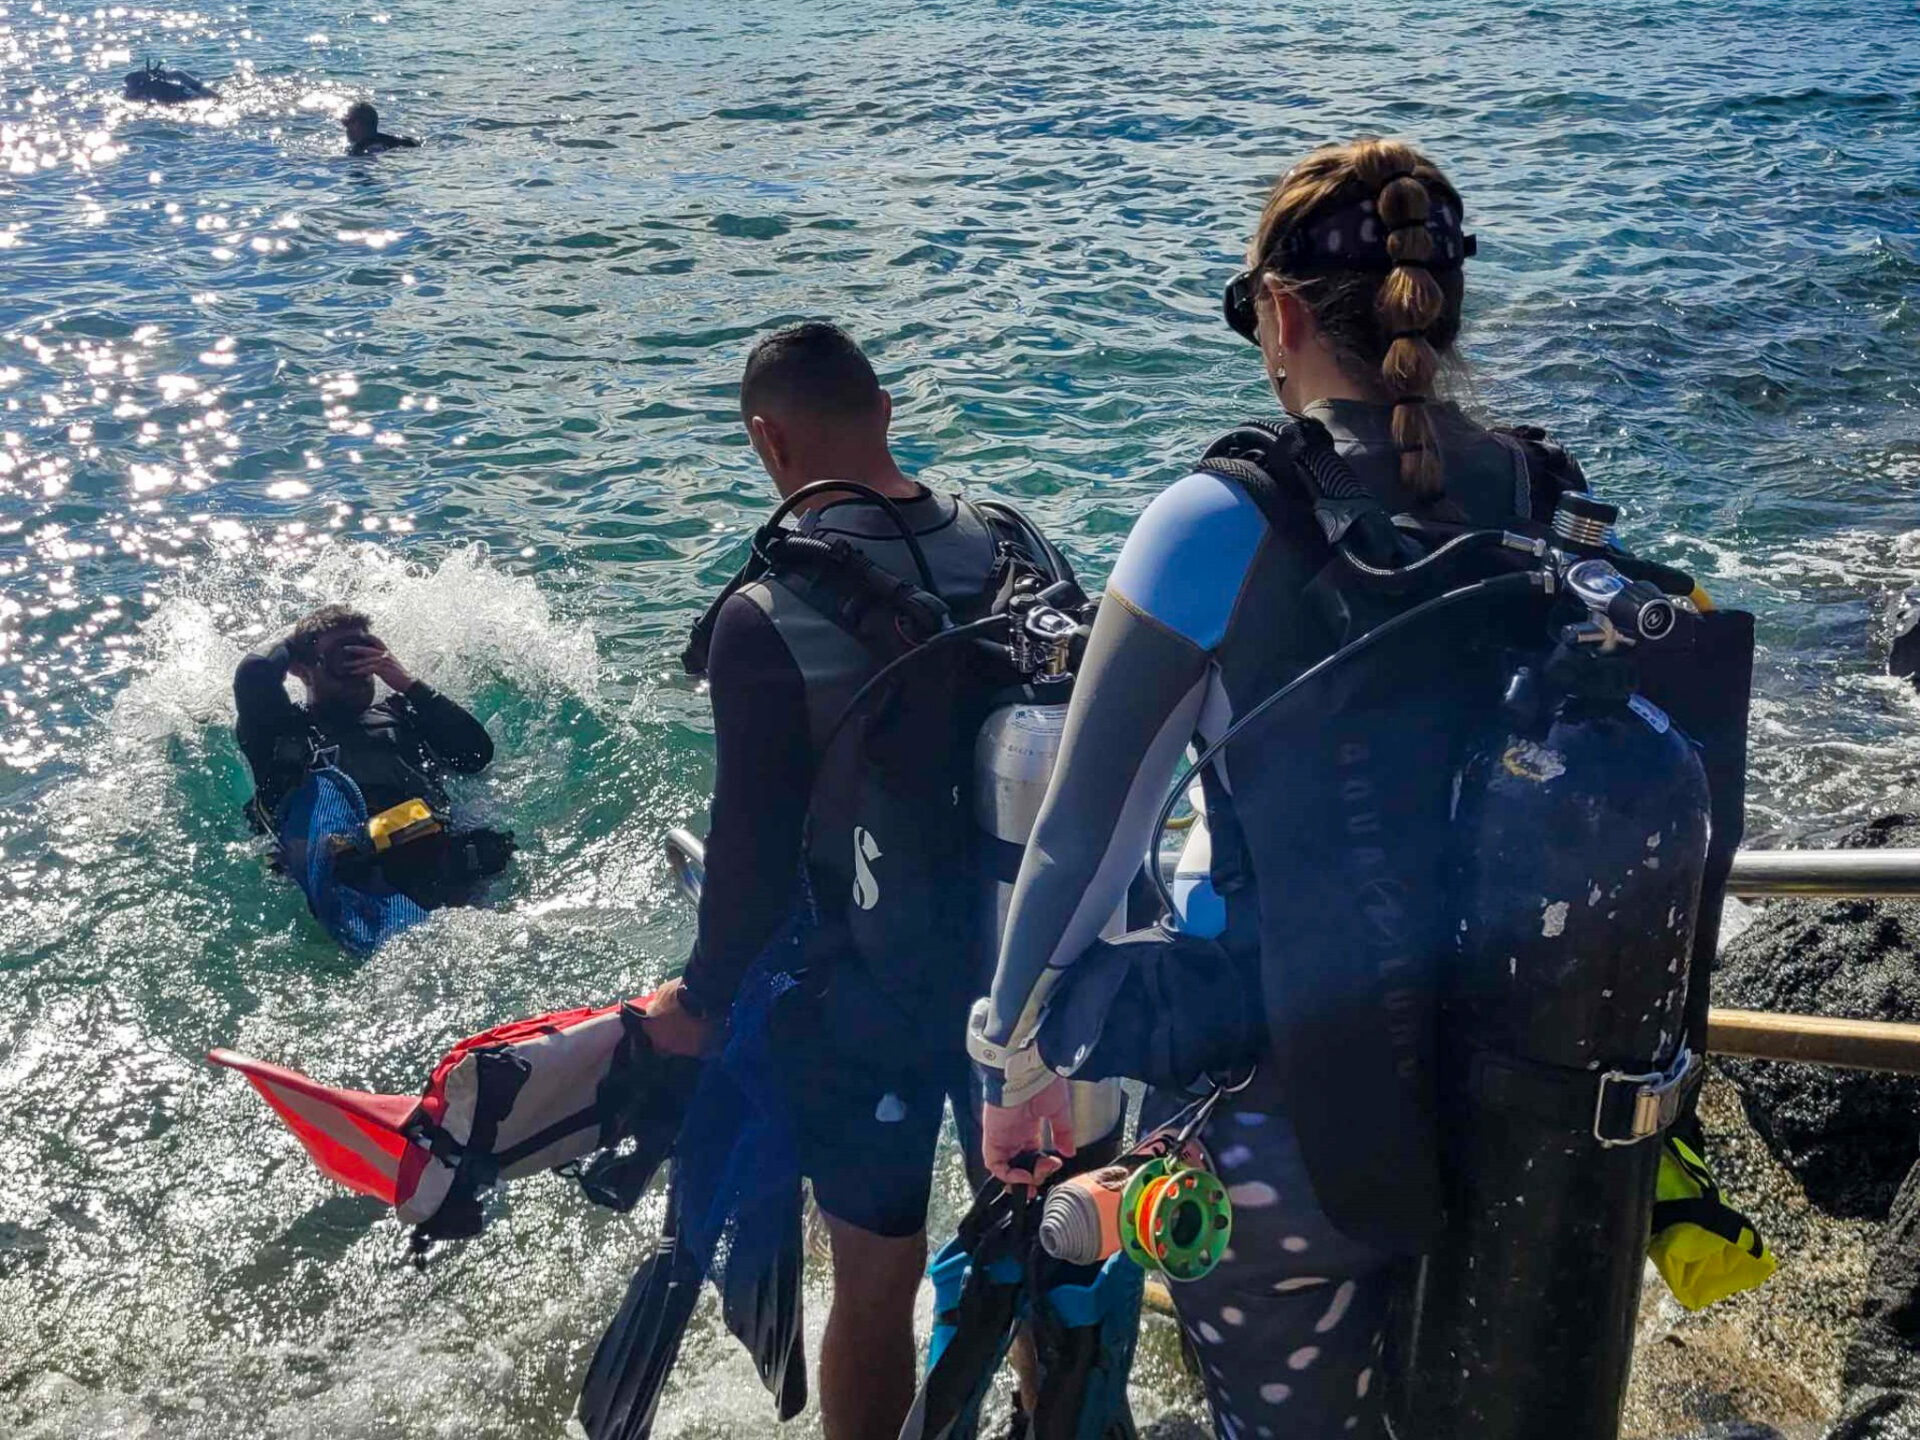 Nudi Wear volunteer divers entering the water